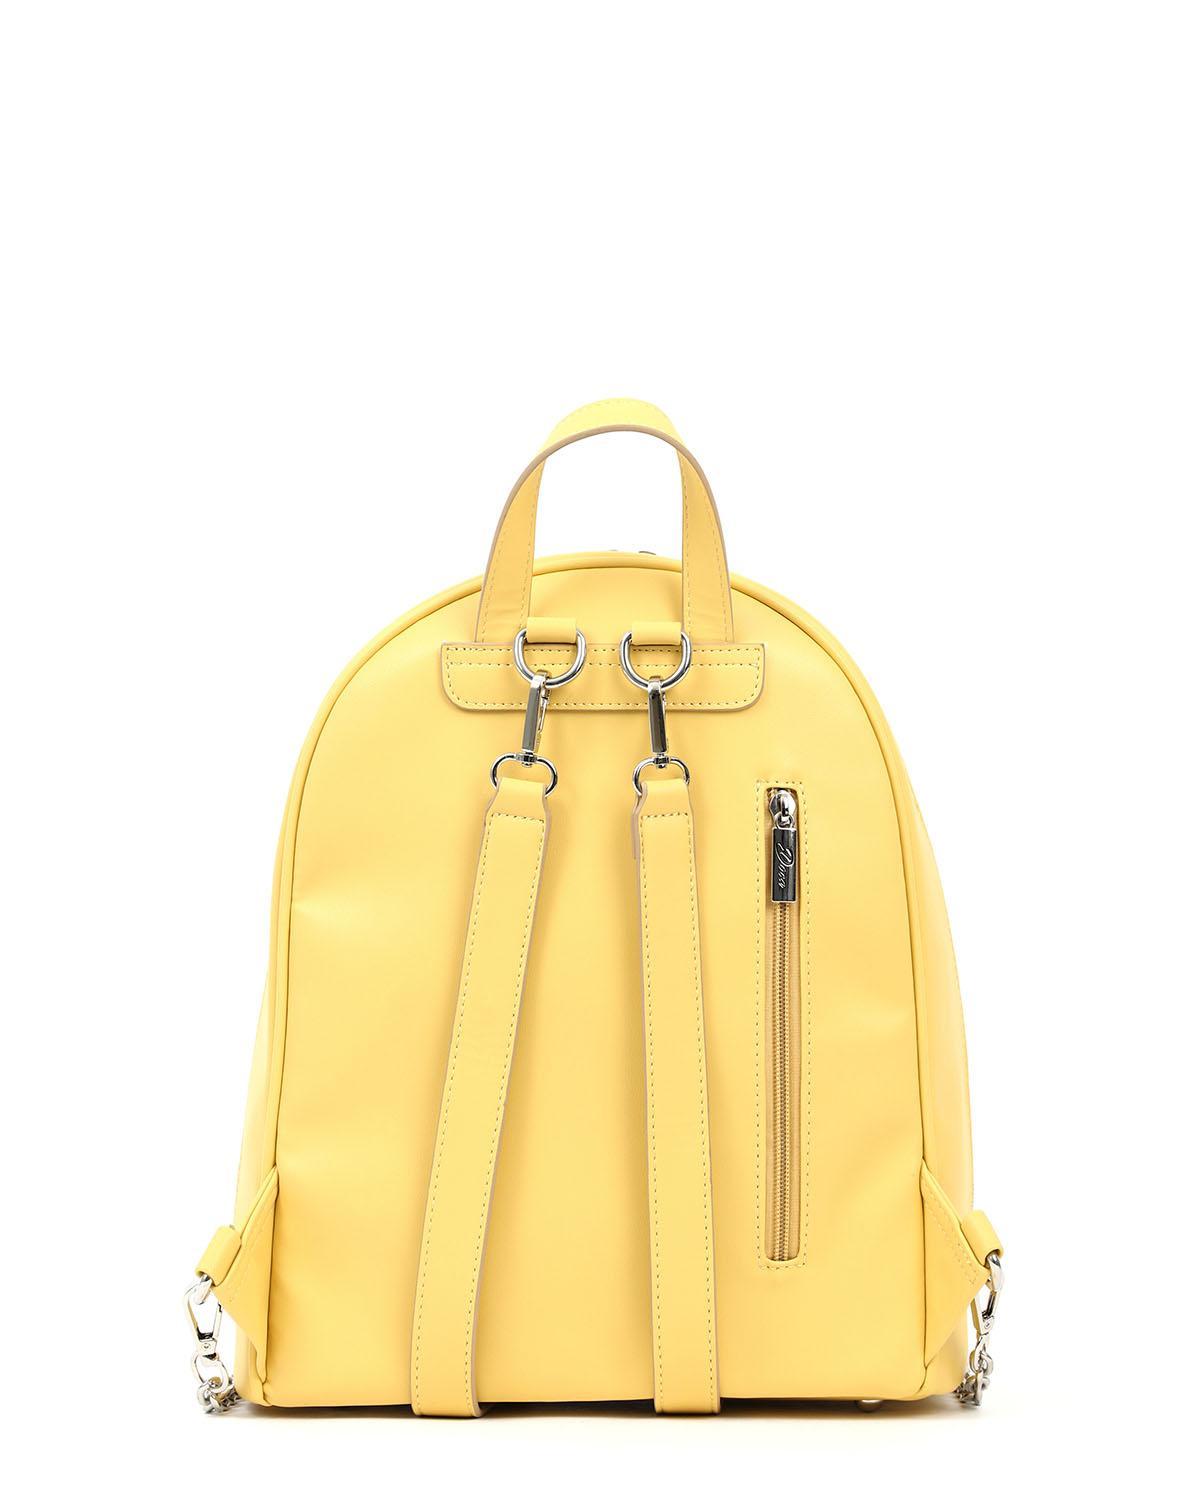 |17272| Τσάντα πλάτης κίτρινη